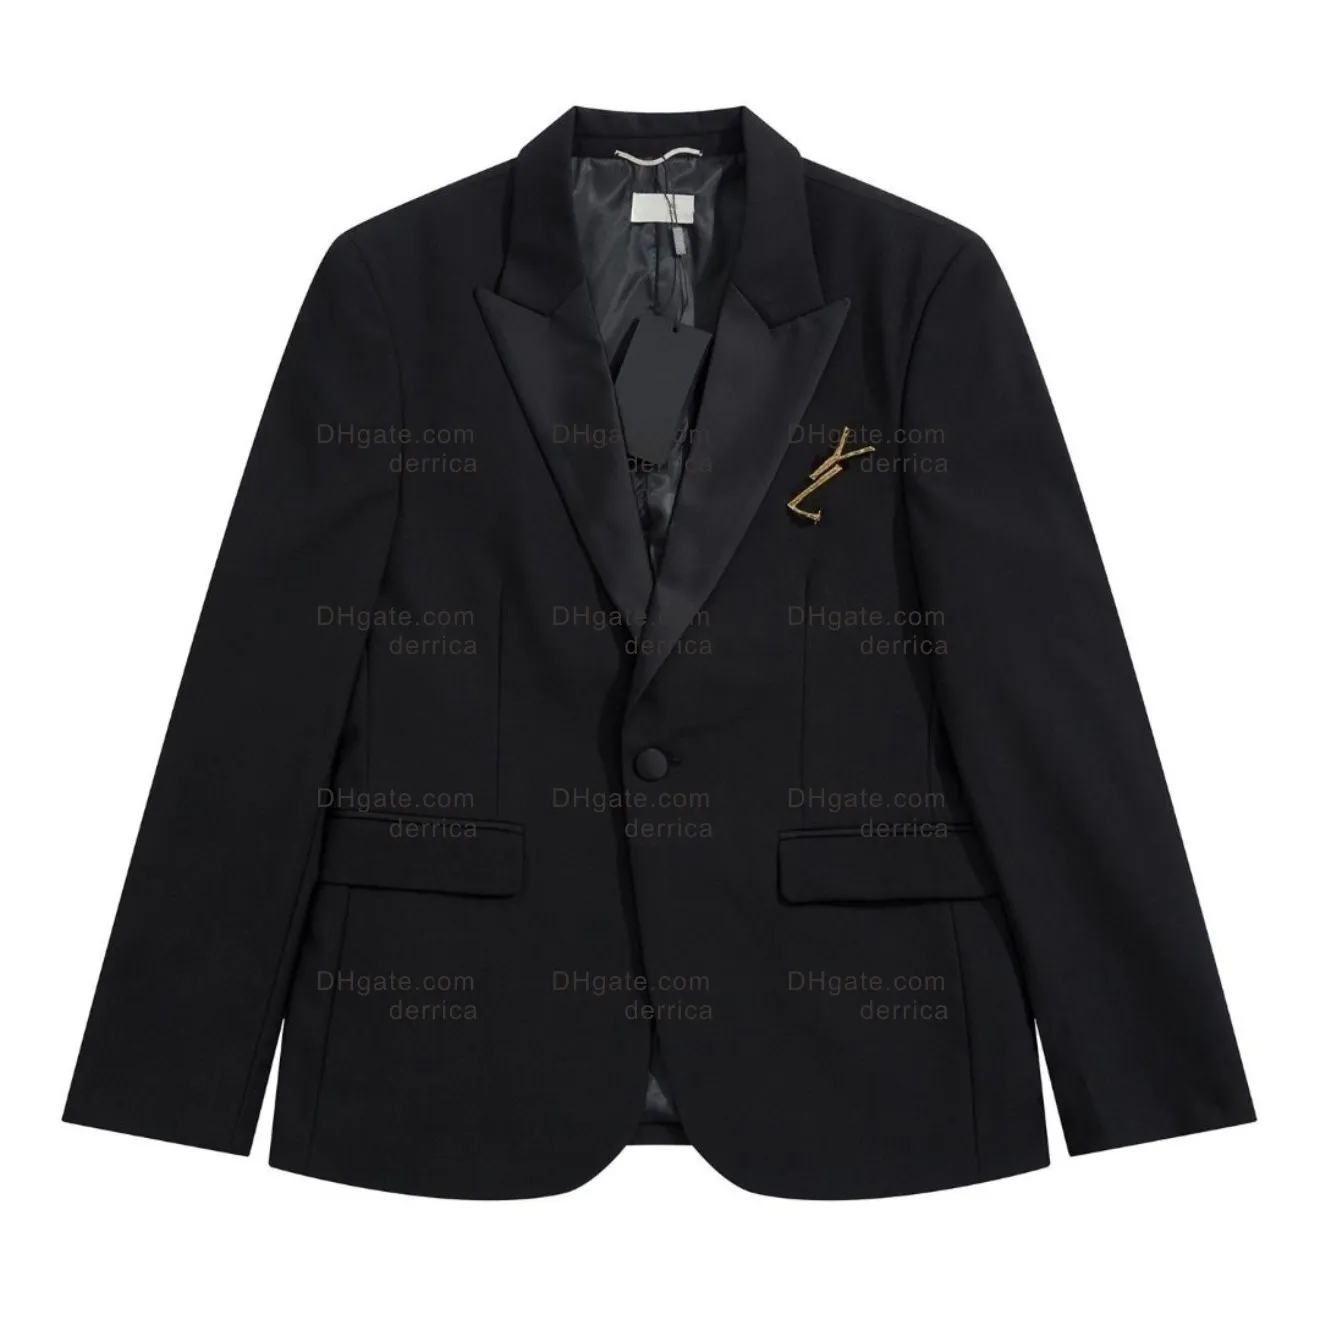 Blazers masculinos de algodão linho moda casaco designer jaquetas negócios casual fino ajuste formal terno blazer masculino ternos estilos